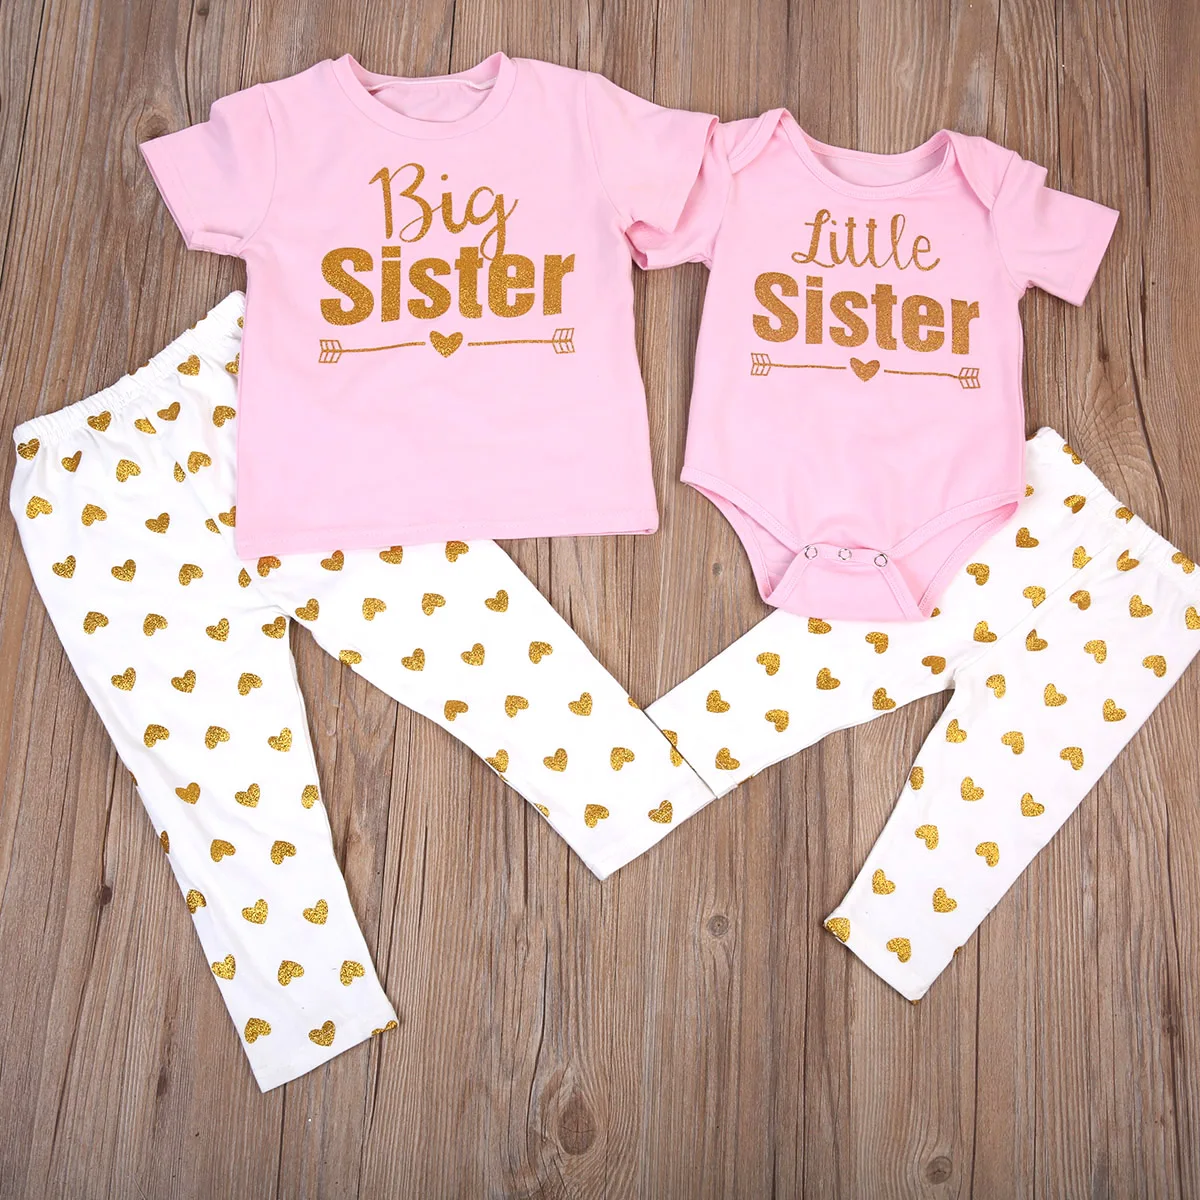 США; Одинаковая одежда; футболка с надписью «Big Sister»; комбинезон с надписью «Little Sister»+ длинные штаны; комплект одежды